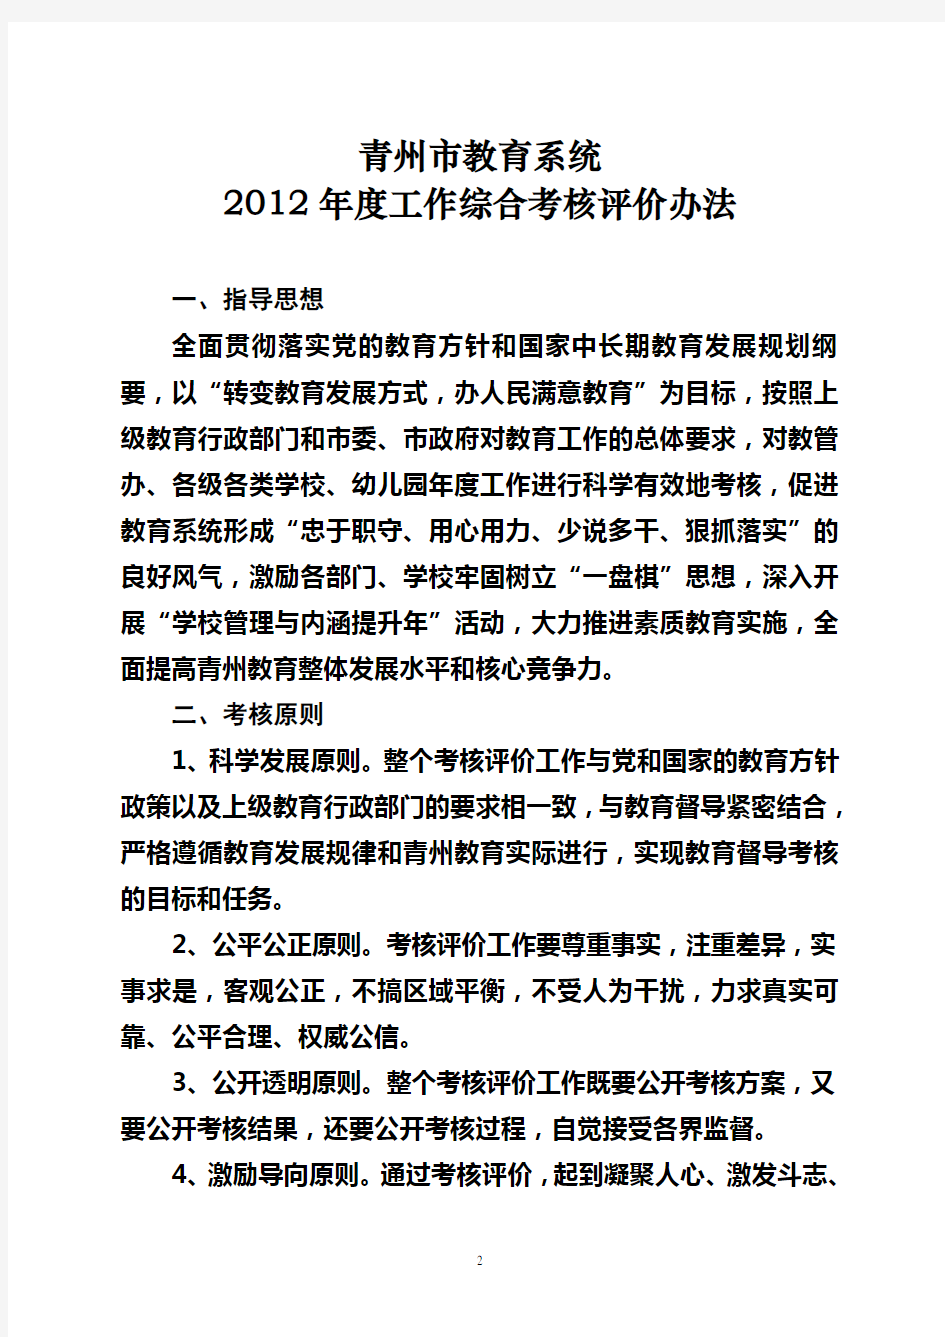 青州市教育系统2012年度综合考核评价办法(定稿)